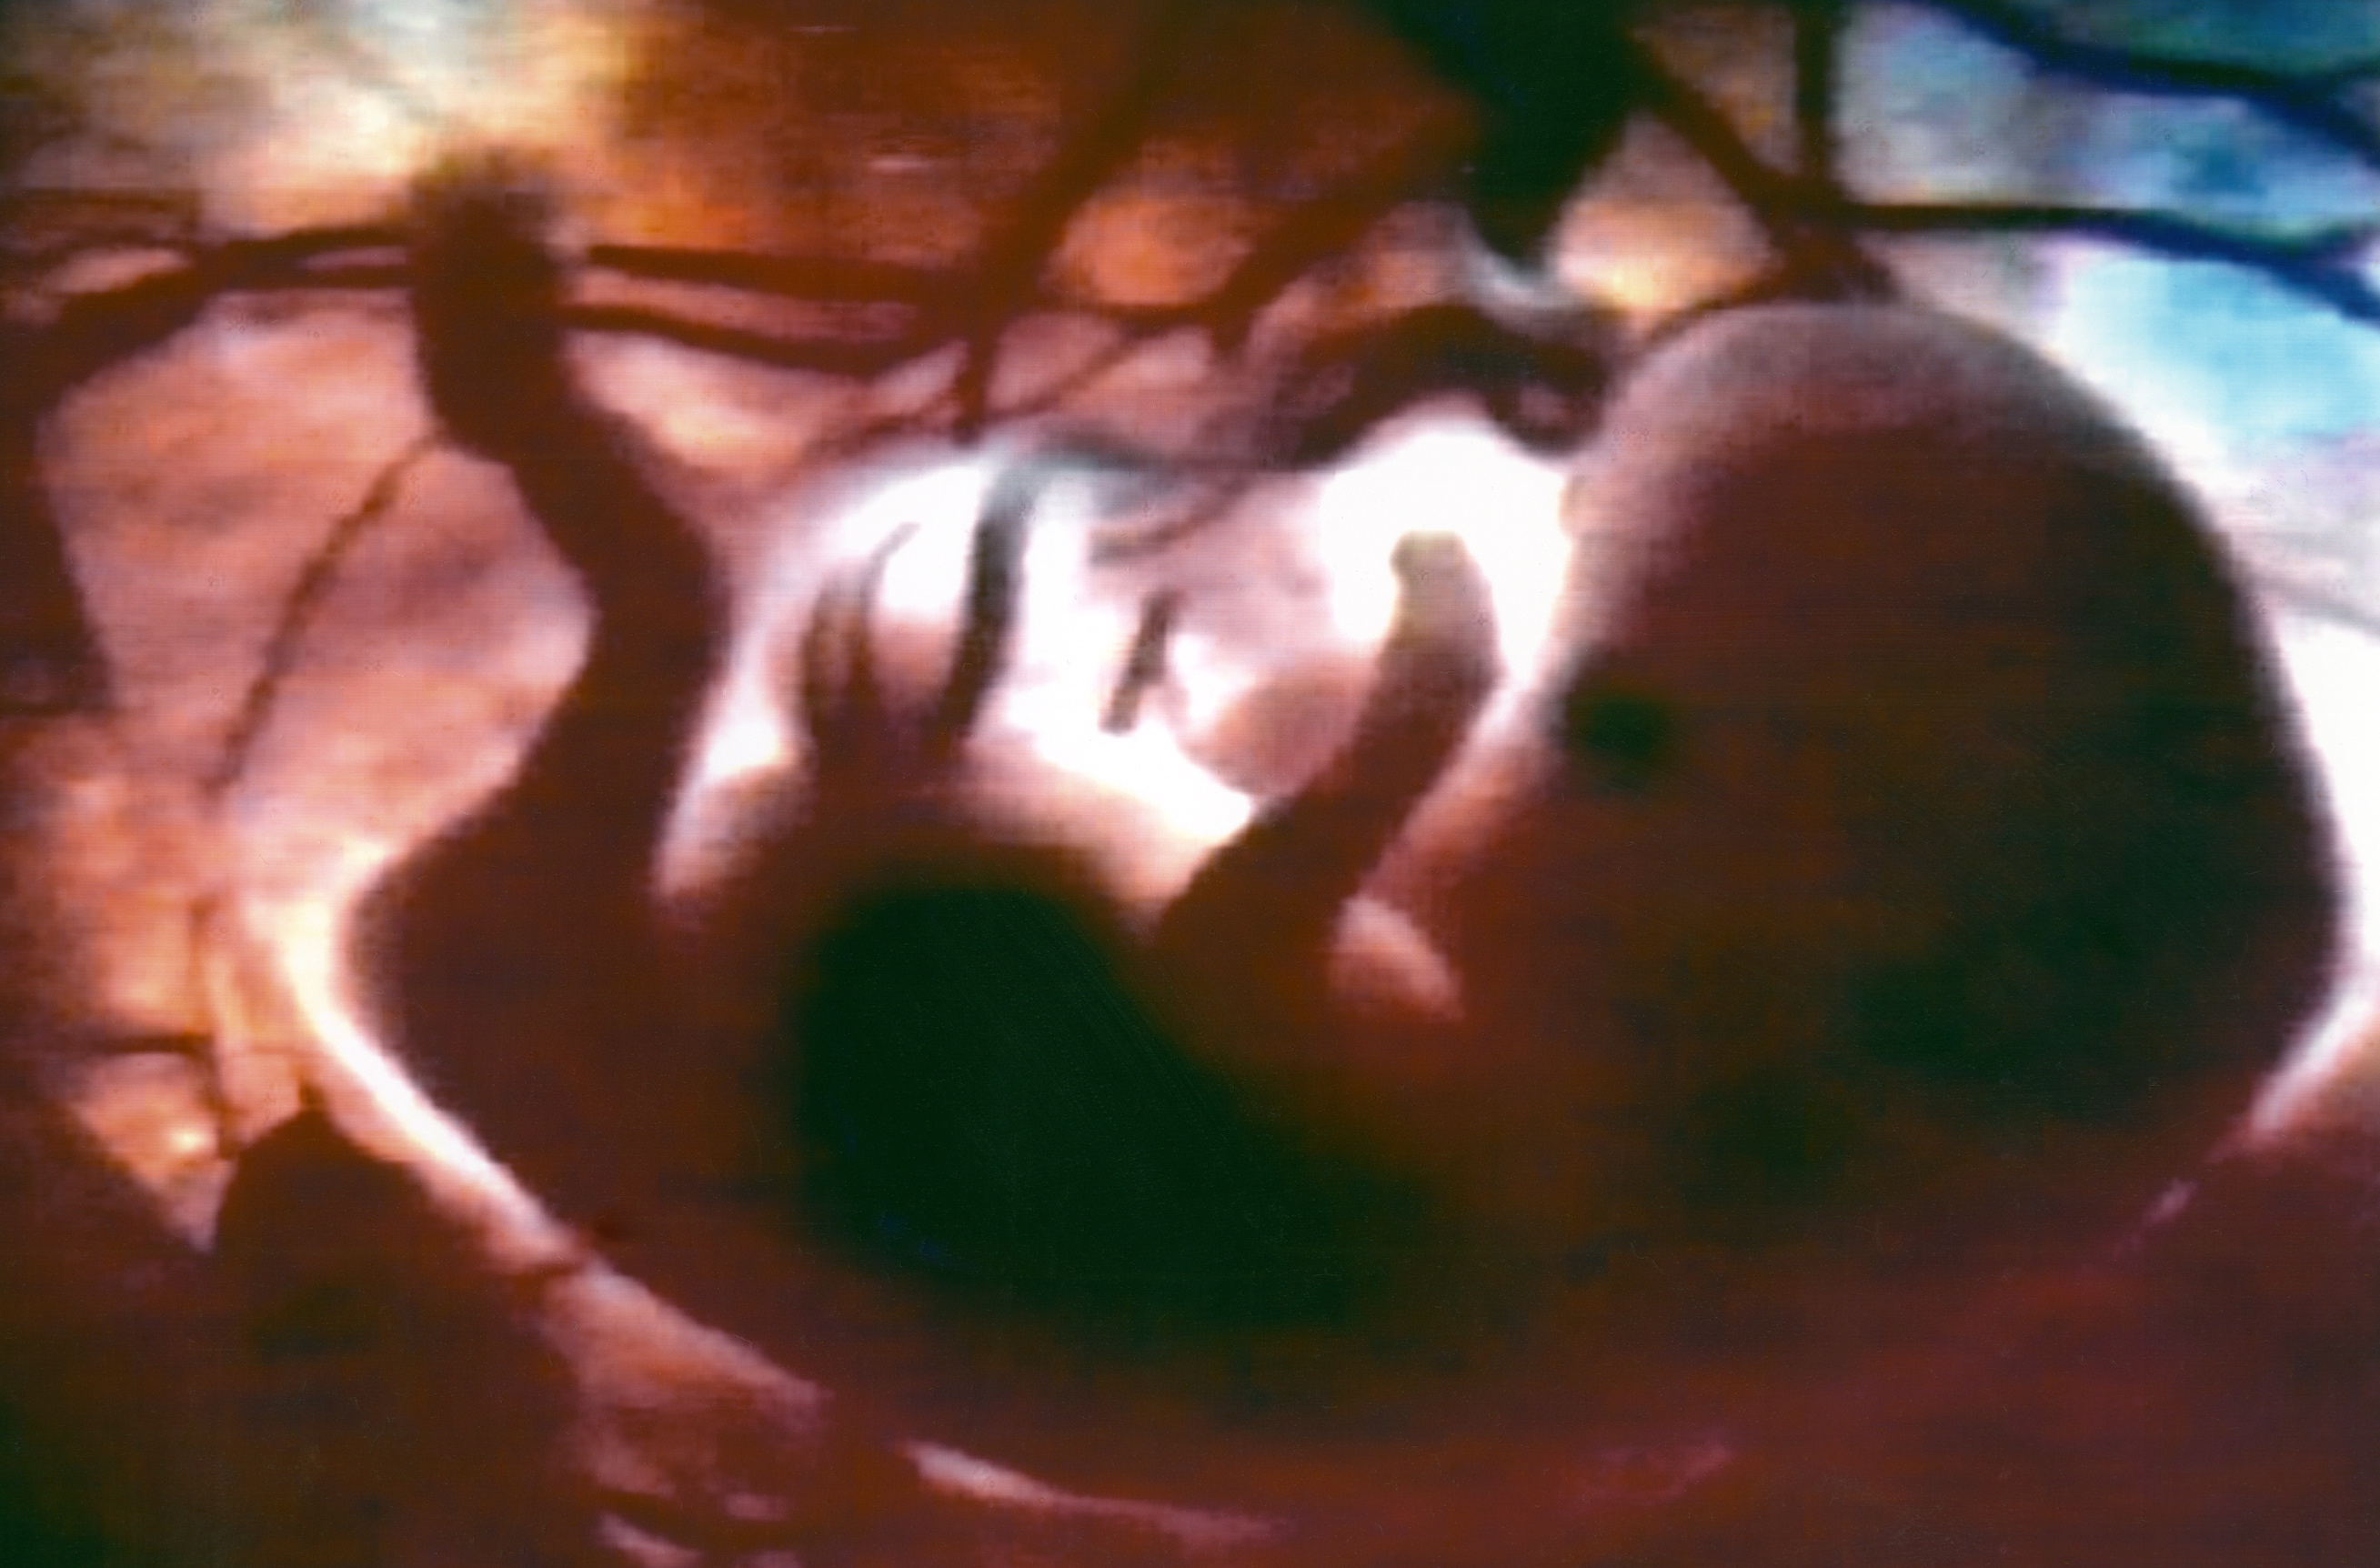 Mujer lleva semanas con feto muerto en el vientre